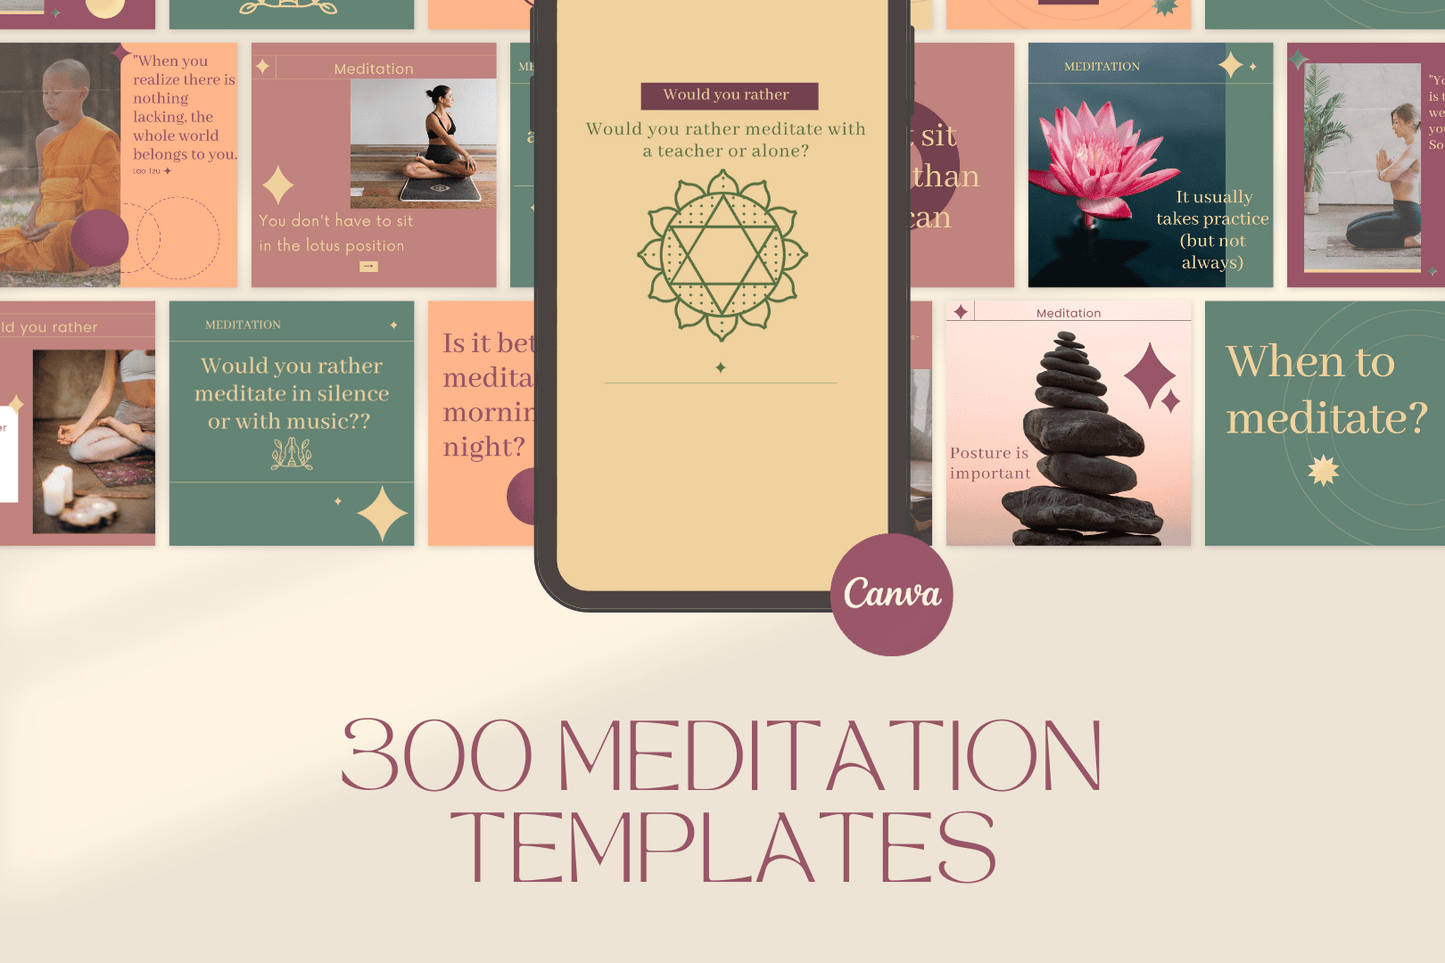 300 Meditation Templates for Social Media